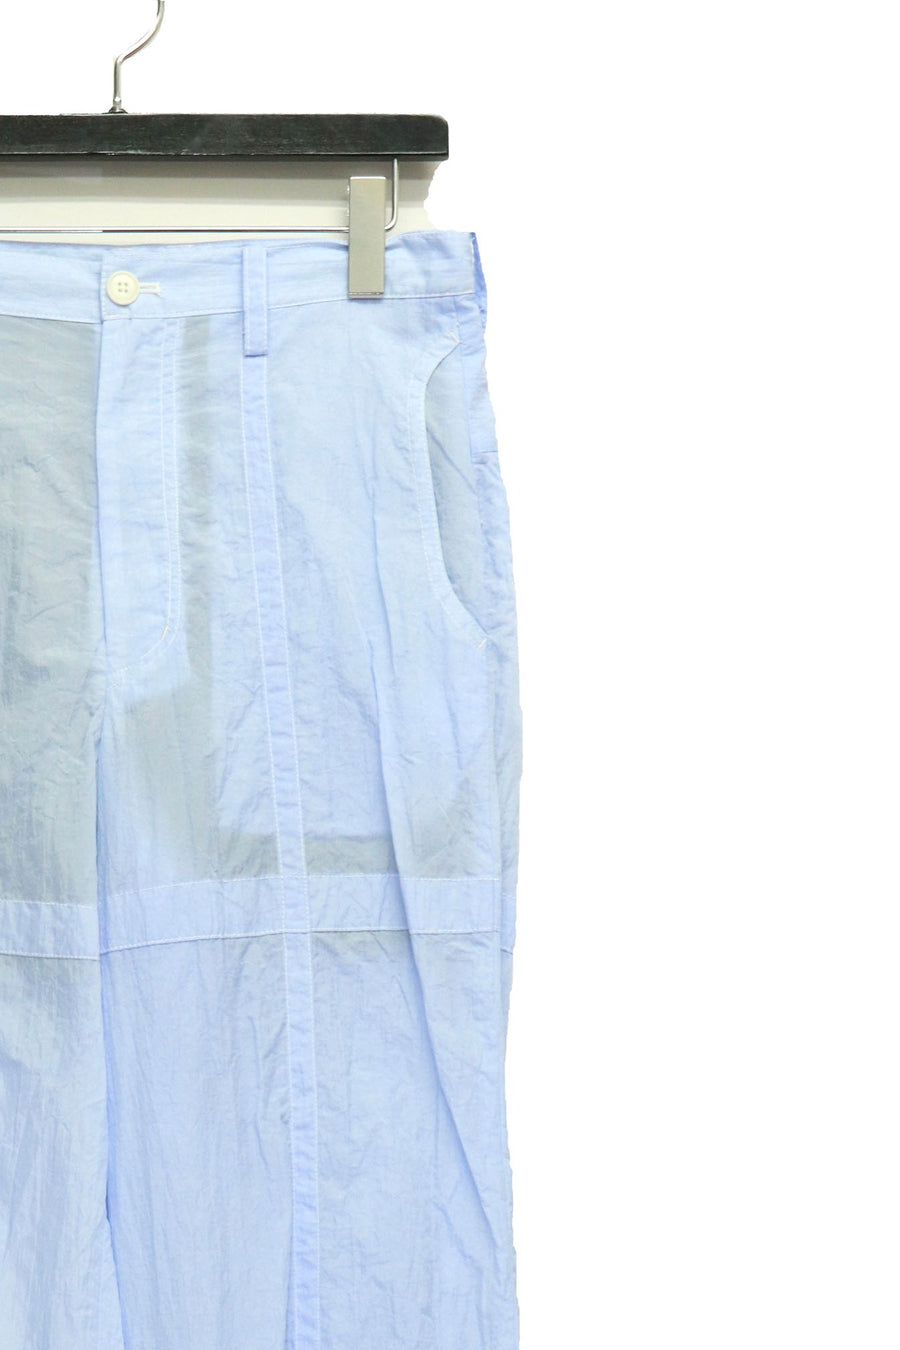 fluss  sheer nylon trousers(L.BLUE)